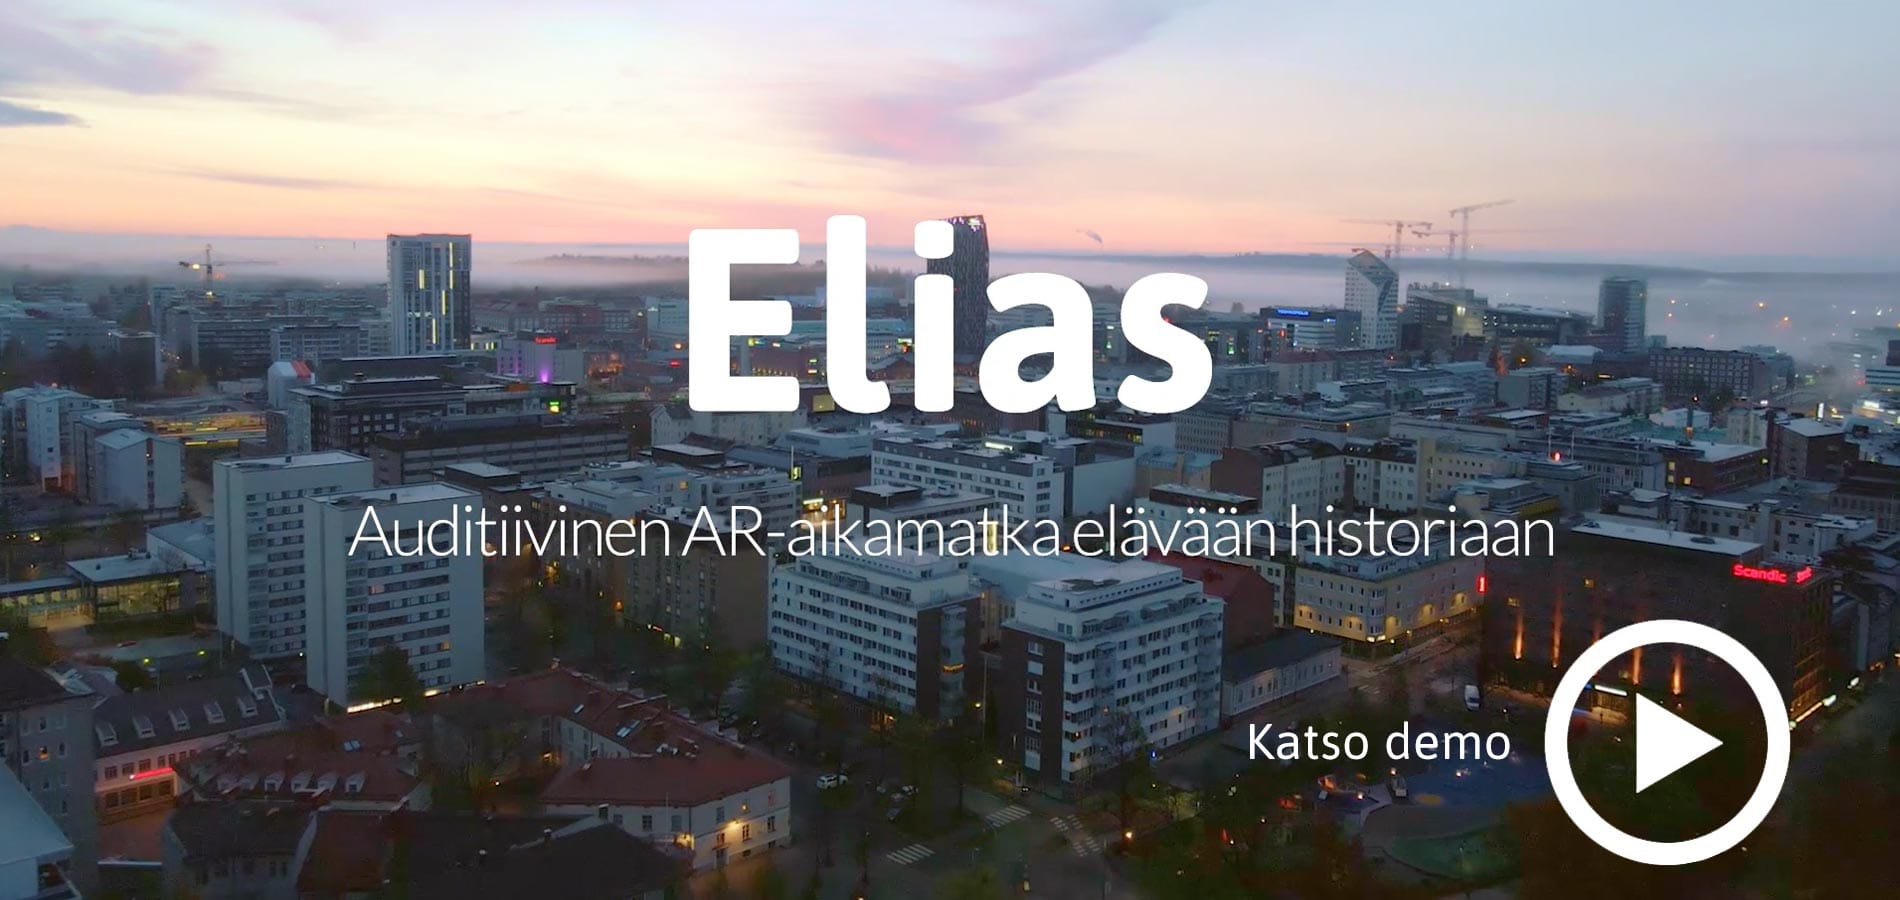 Elias – auditiivinen aikamatka elävään historiaan - kaupunkioppaan demovideo